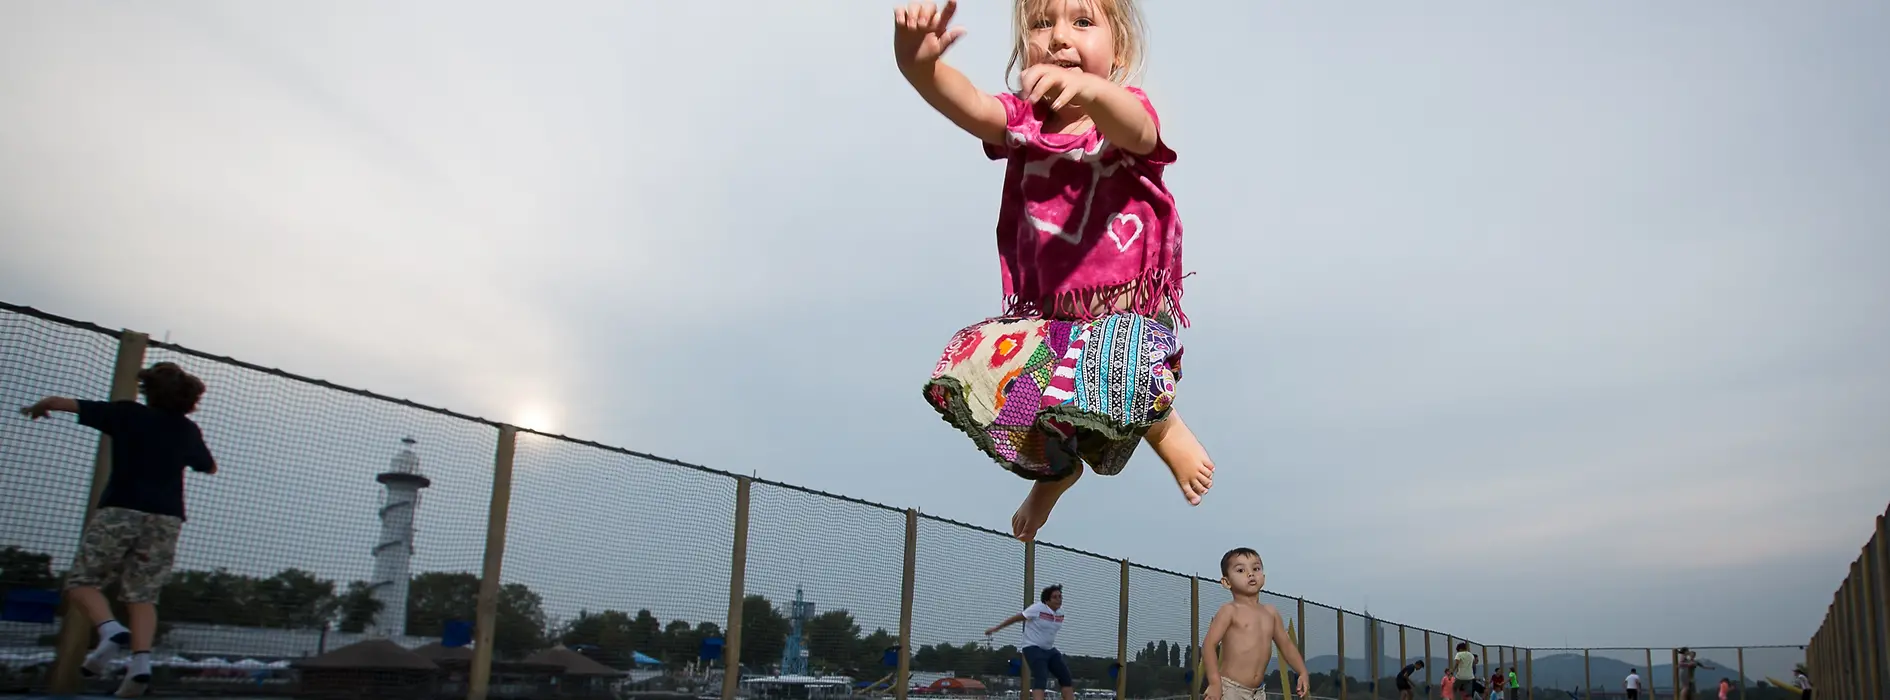 Girl jumping at the Danubejumping trampoline at Donauinsel